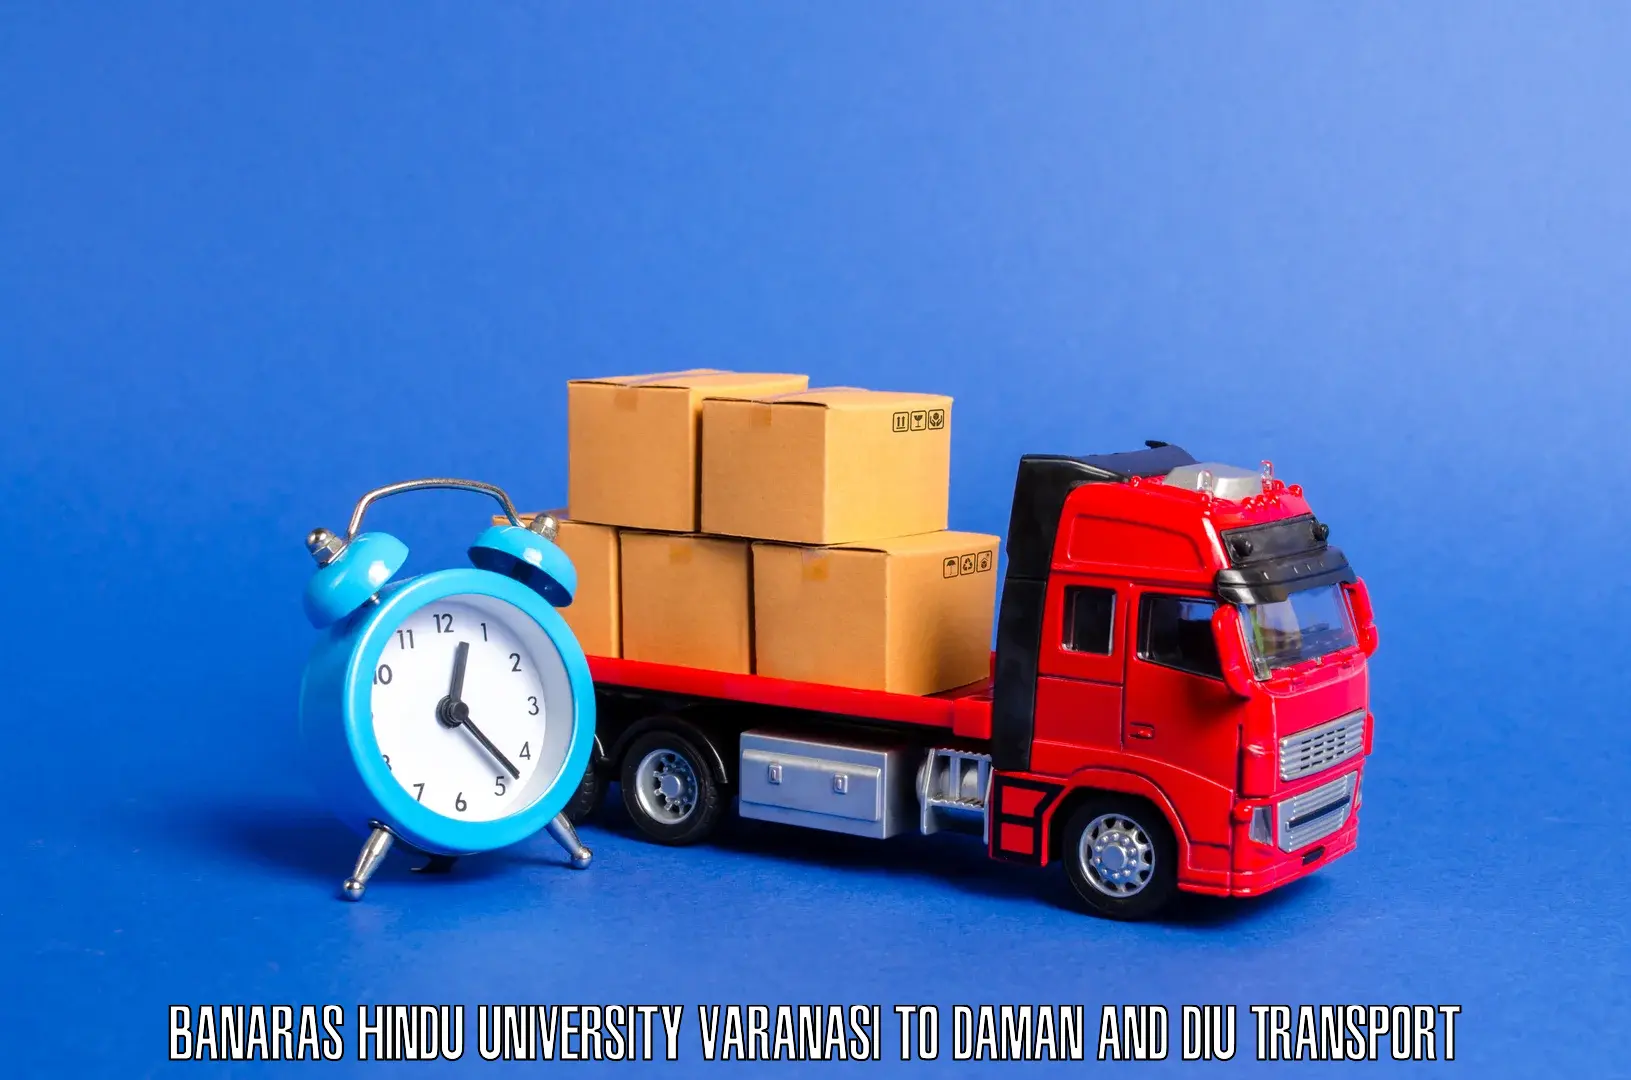 All India transport service Banaras Hindu University Varanasi to Daman and Diu